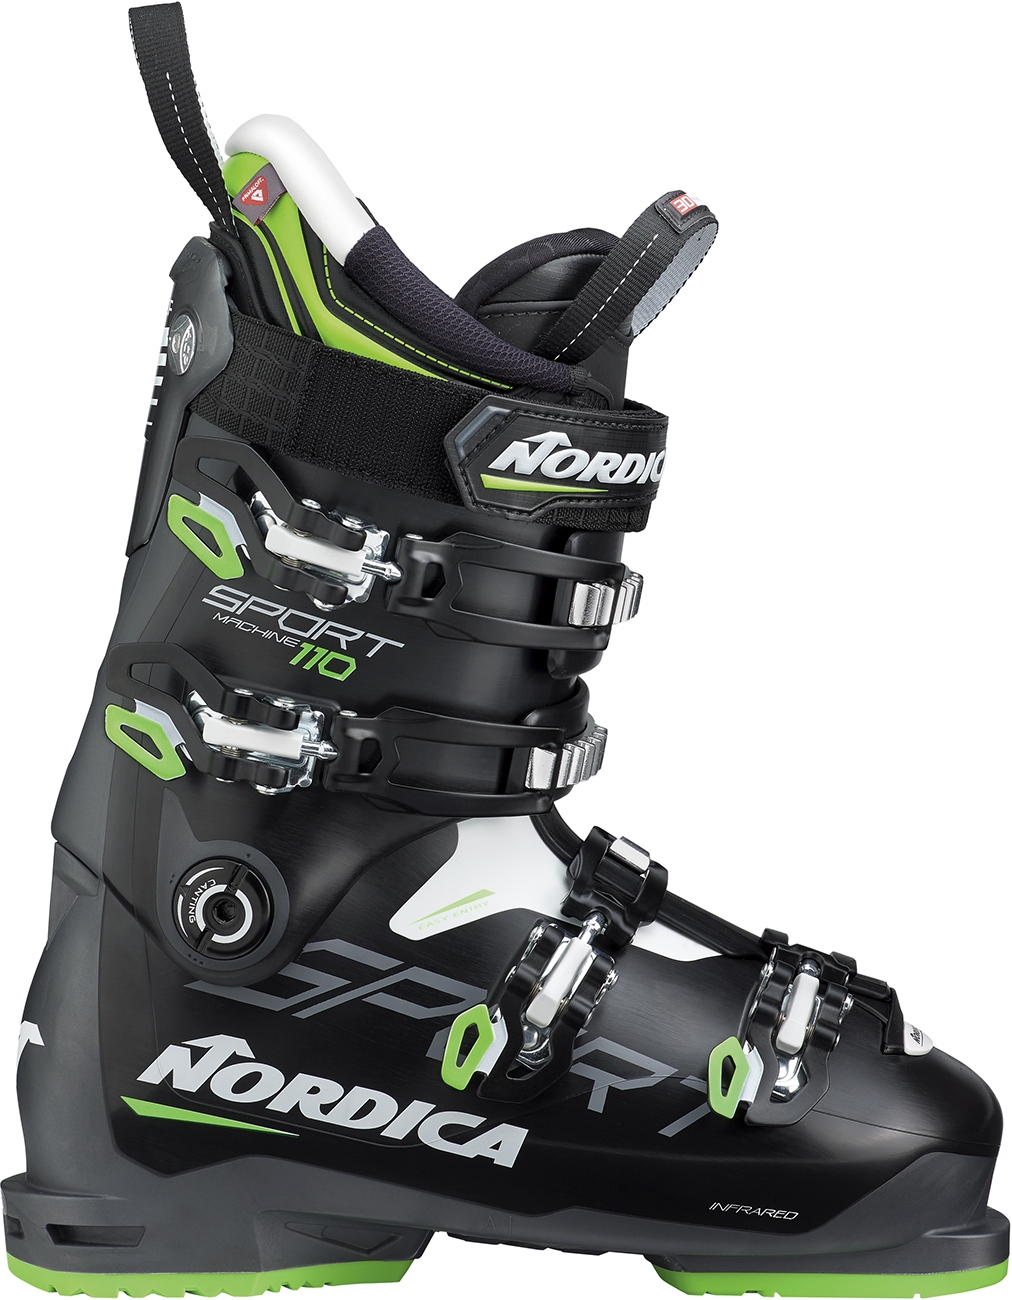 NORDICA Sportmachine 110 Skischuhe